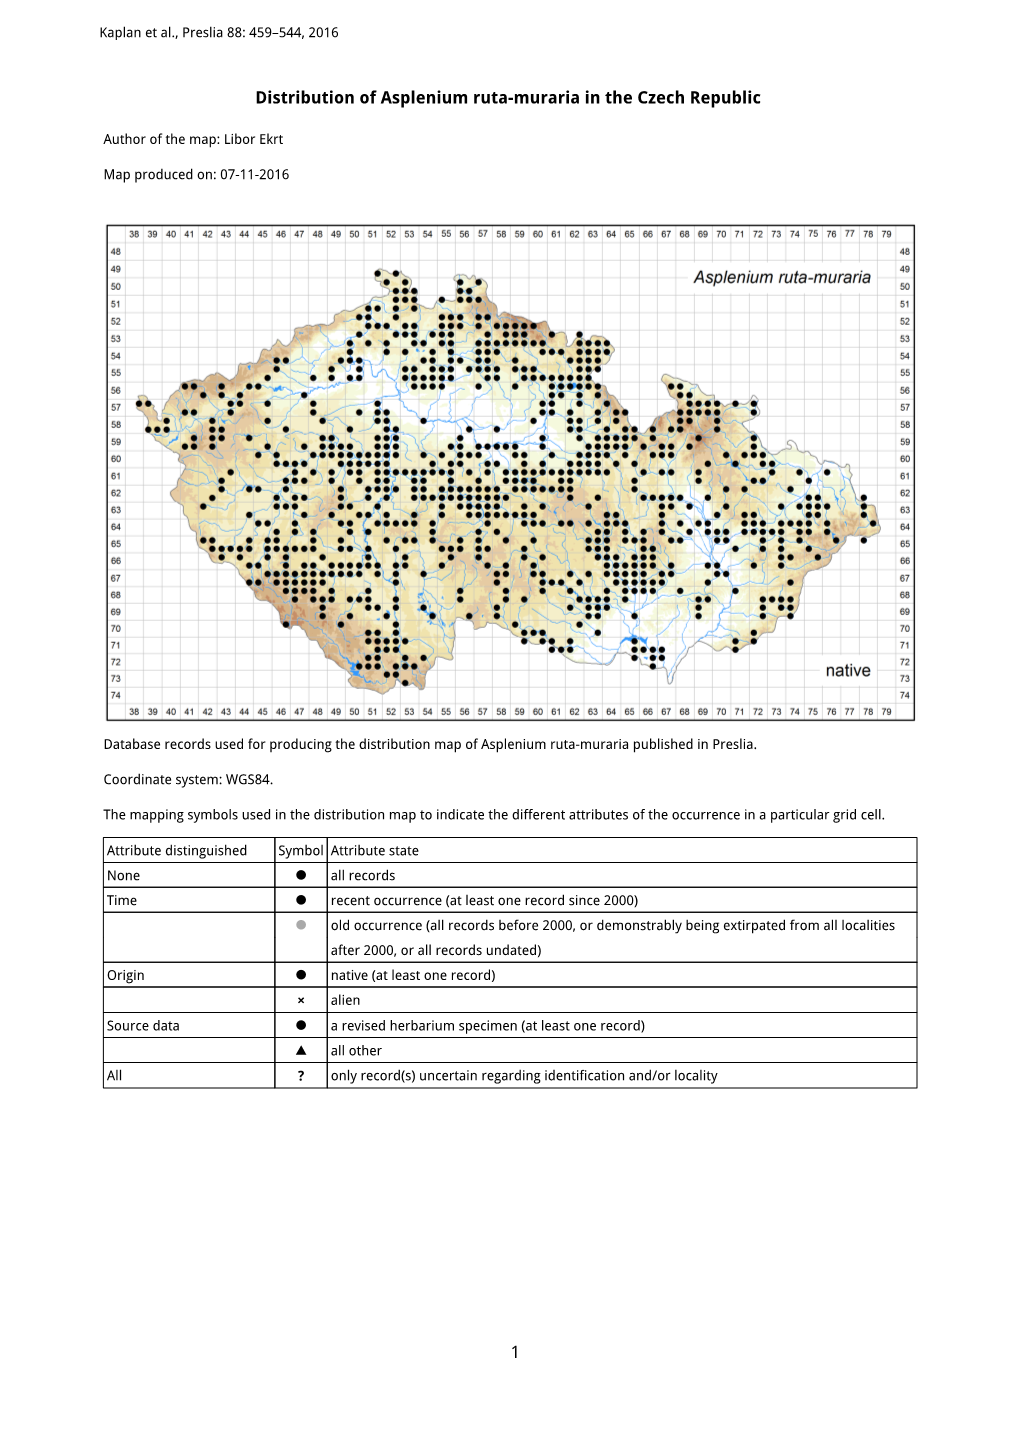 1 Distribution of Asplenium Ruta-Muraria in the Czech Republic